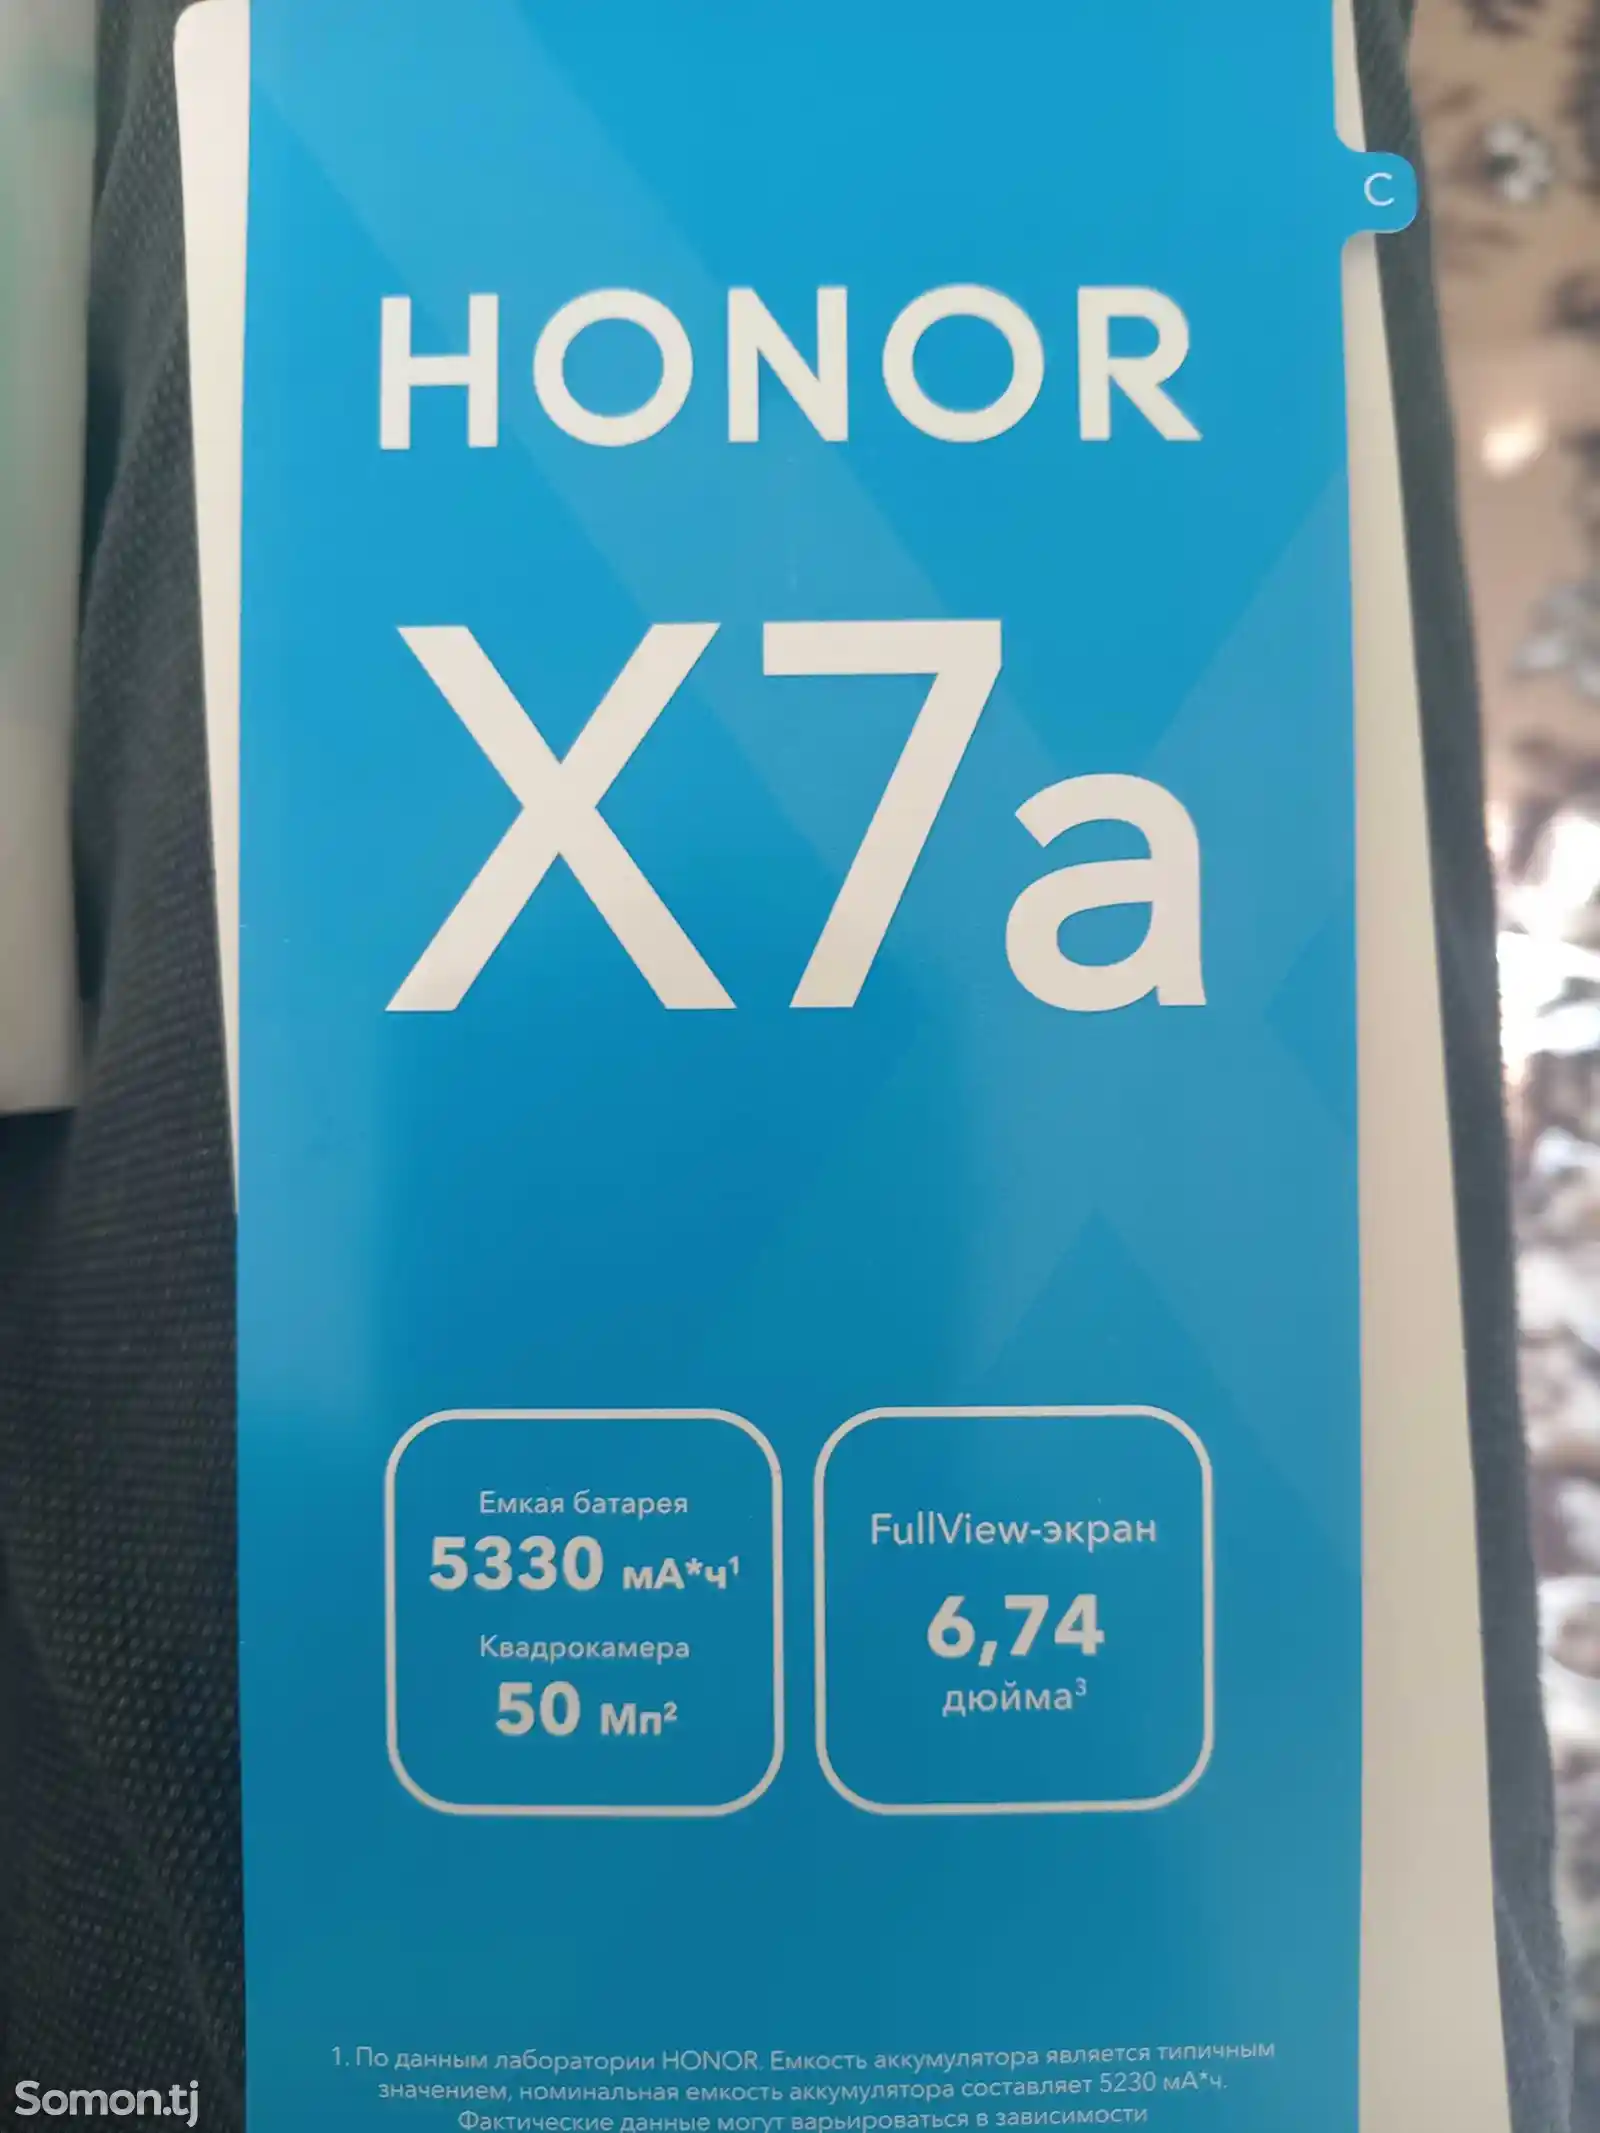 Huawei Honor X7a-4